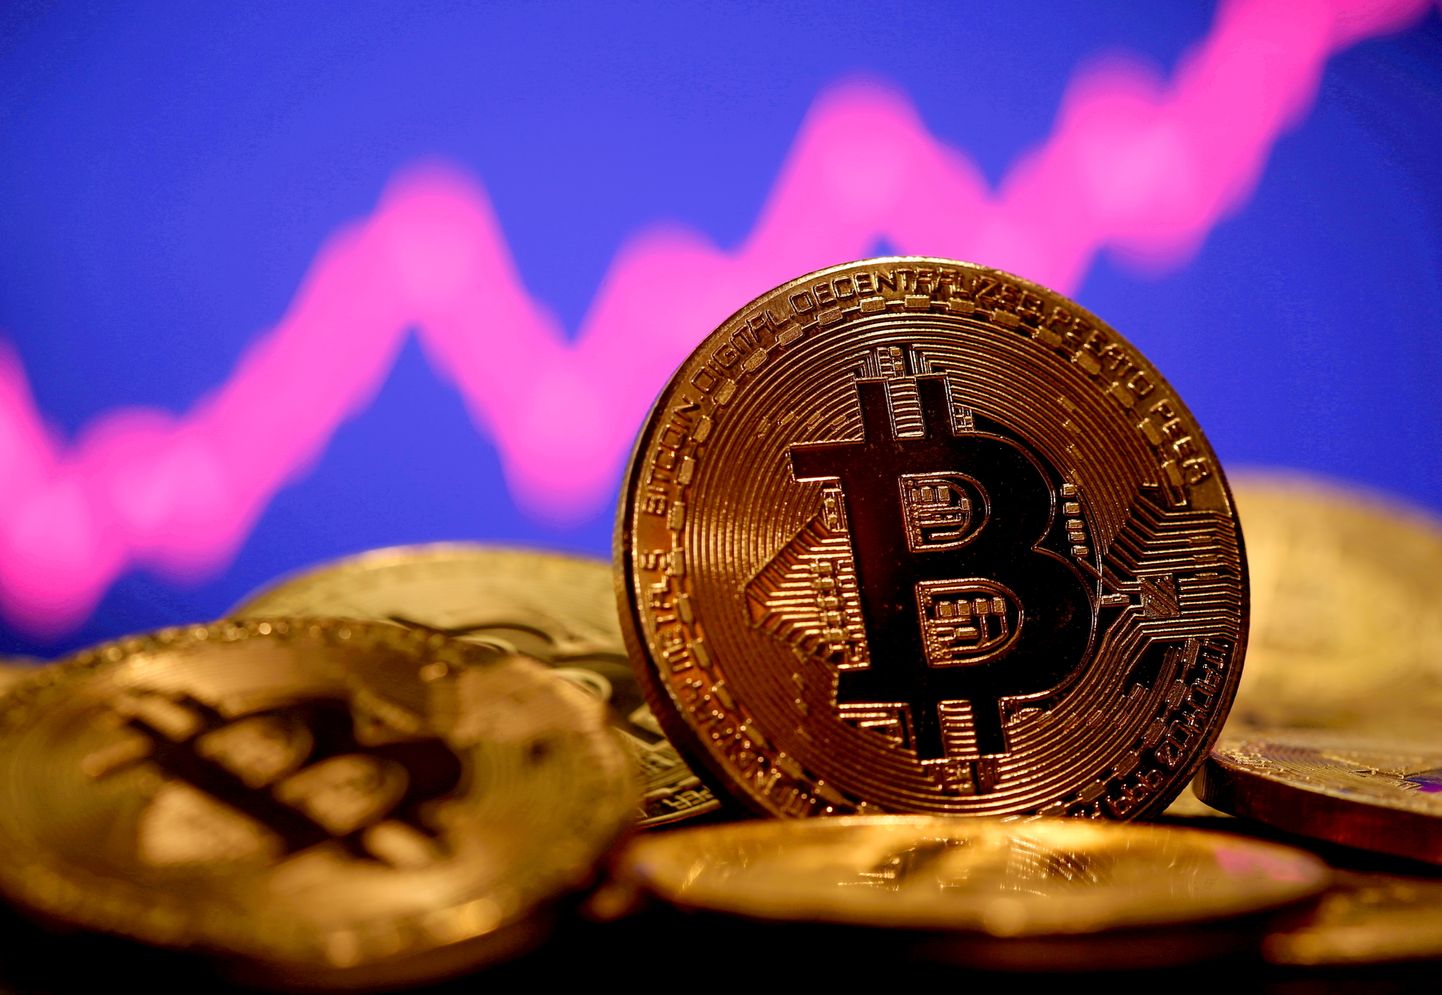 Bitcoinile ennustatakse suurt hinnatõusu